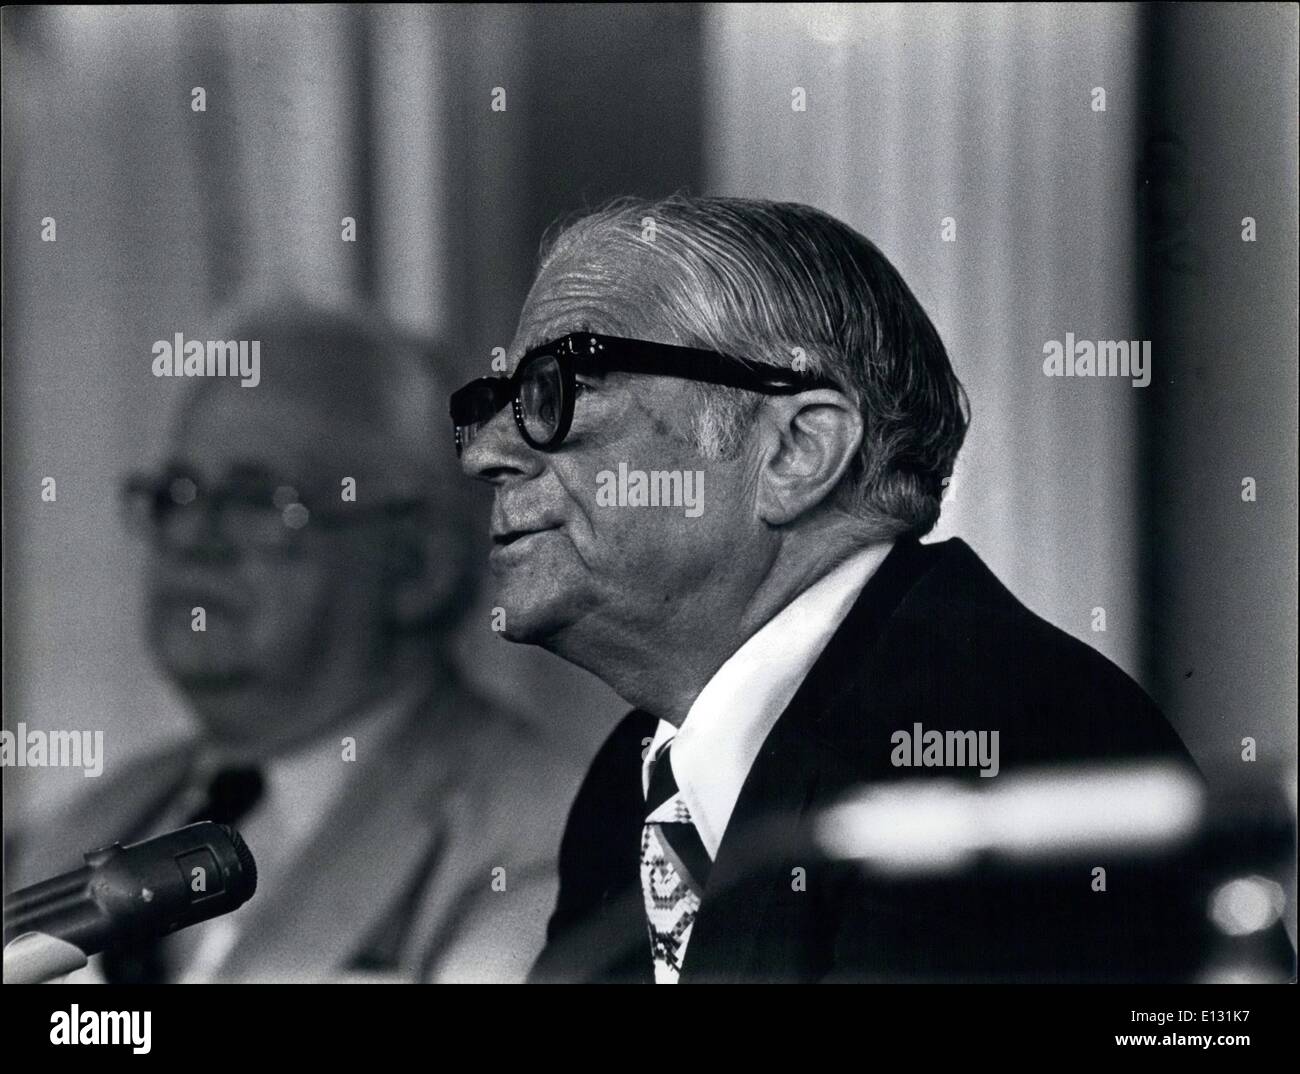 Le 26 février 2012, le maire d'Abraham Beame lors d'une conférence de presse à New York. Juillet 1975 ESS.c Banque D'Images